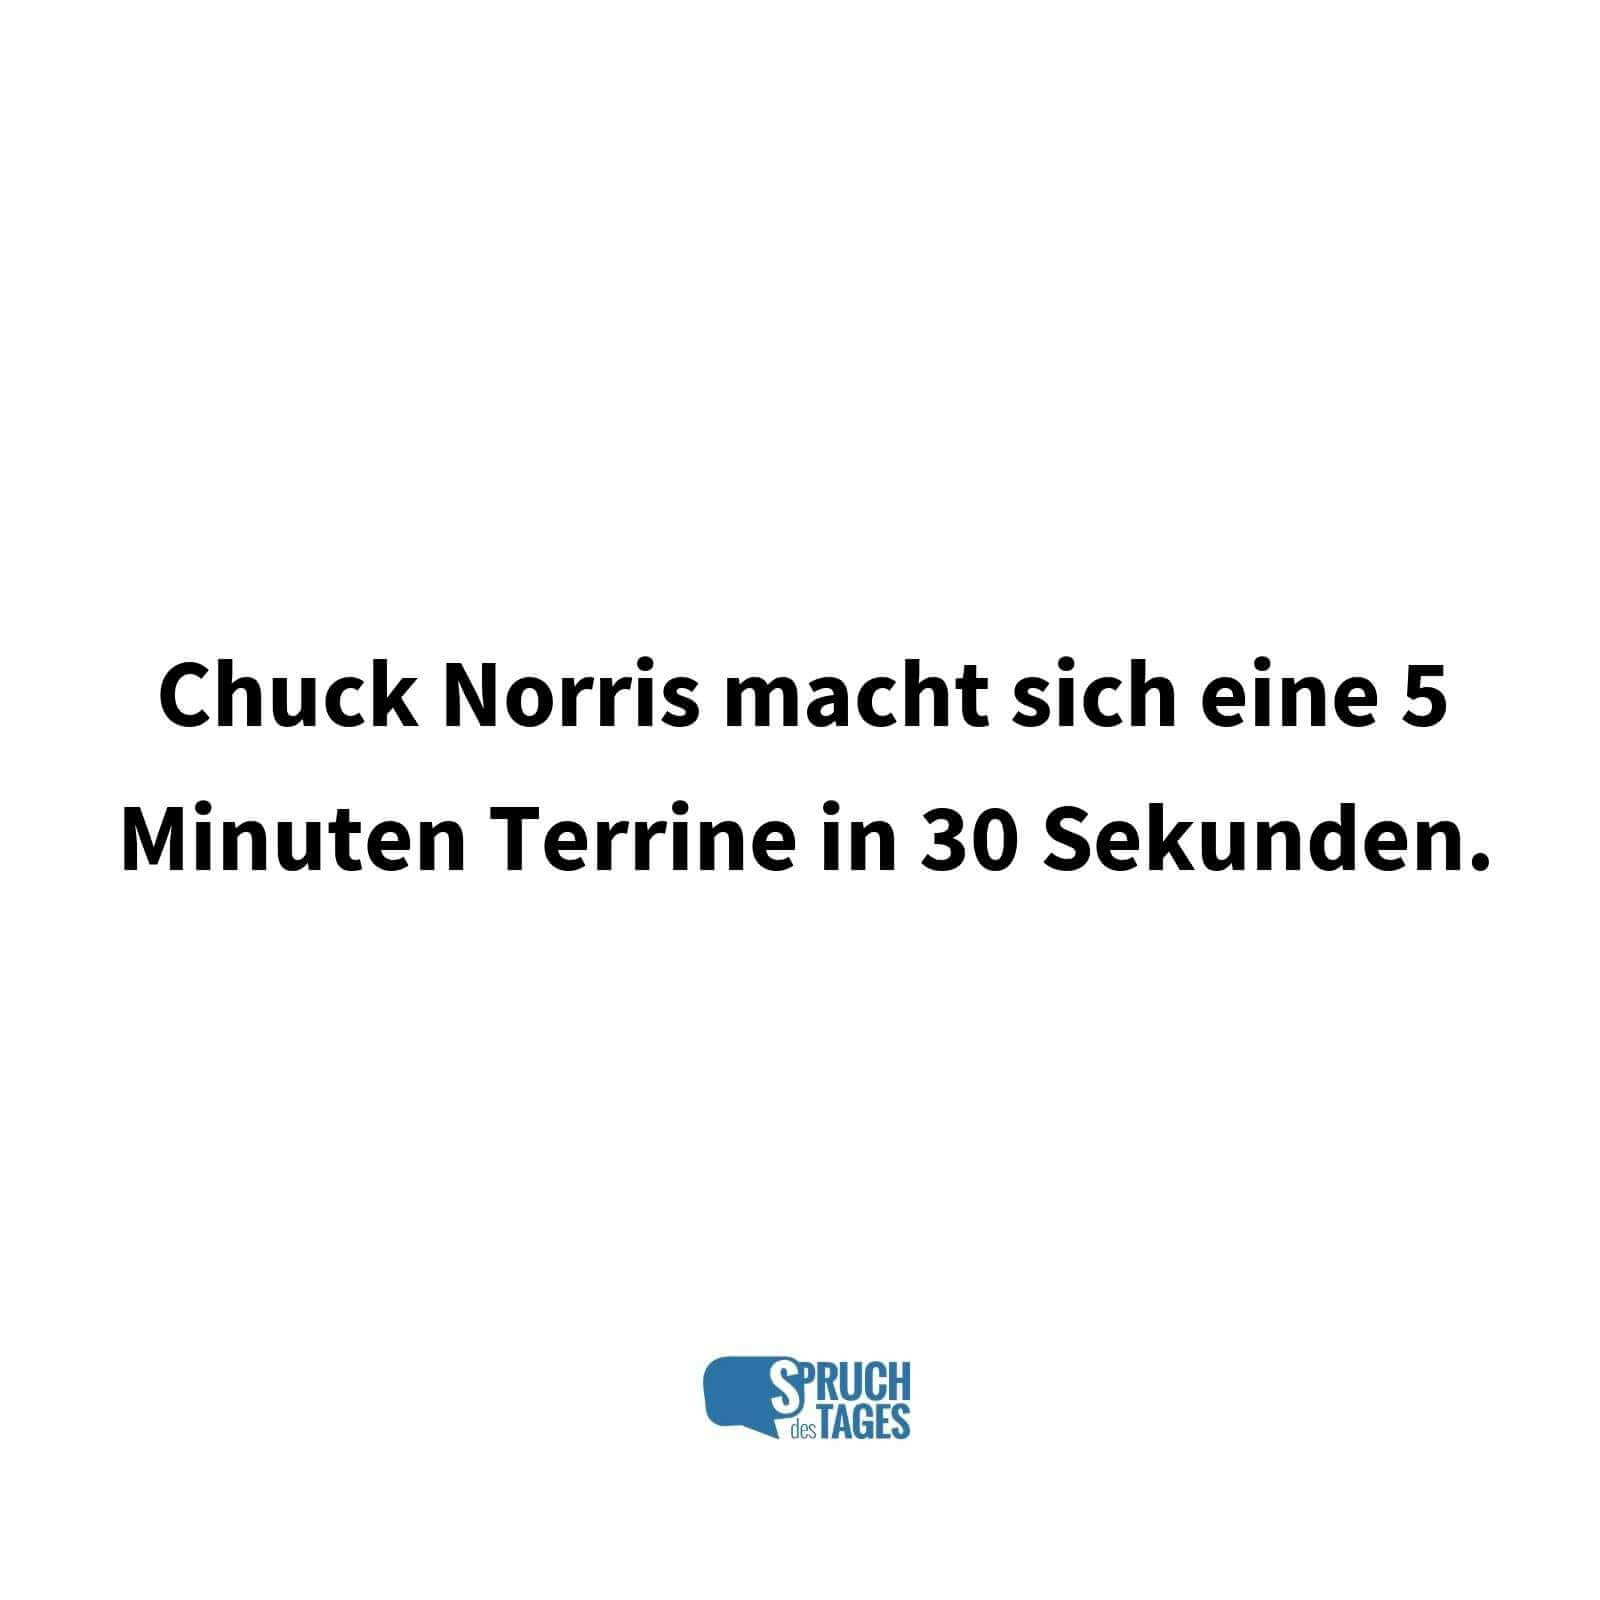 Chuck Norris macht sich eine 5 Minuten Terrine in 30 Sekunden.